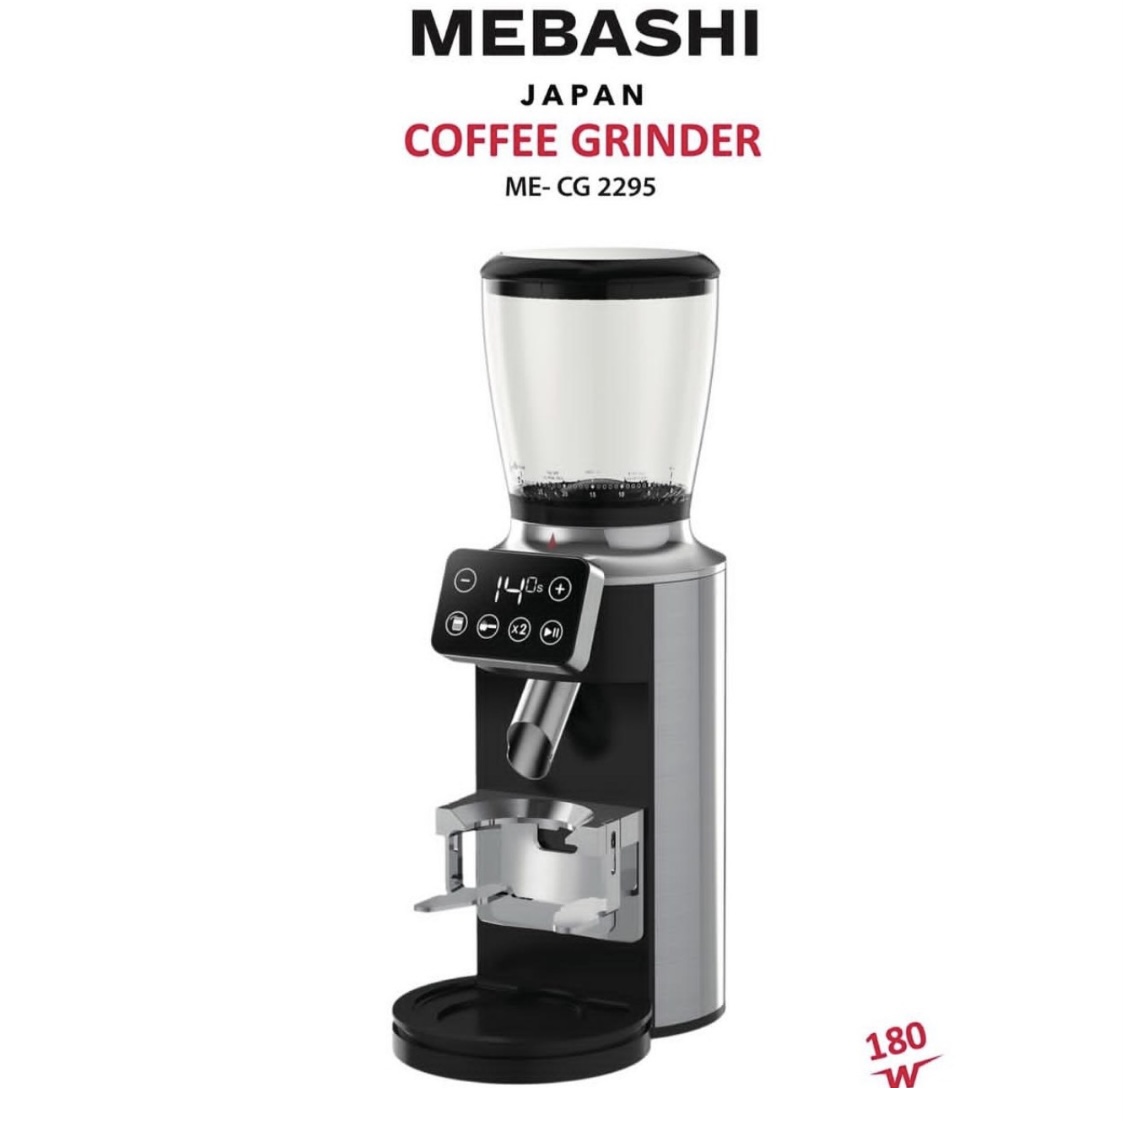 آسیاب قهوه مباشی مدل ME-CG2295 رنگ سیلور